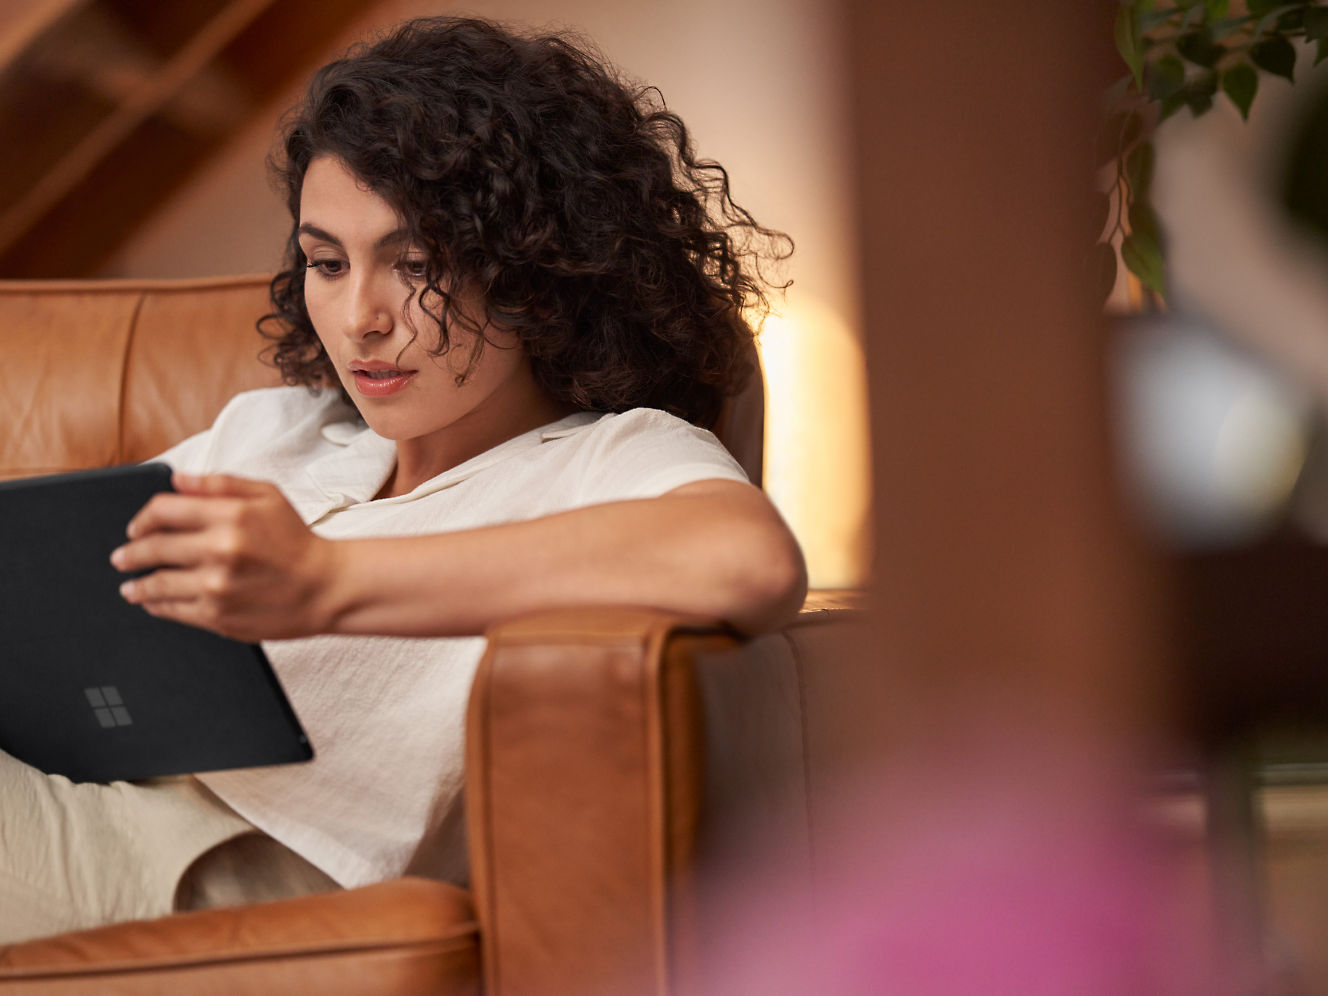 Een vrouw met krullend haar die geconcentreerd op een tablet leest terwijl ze in een bruine leren stoel zit.